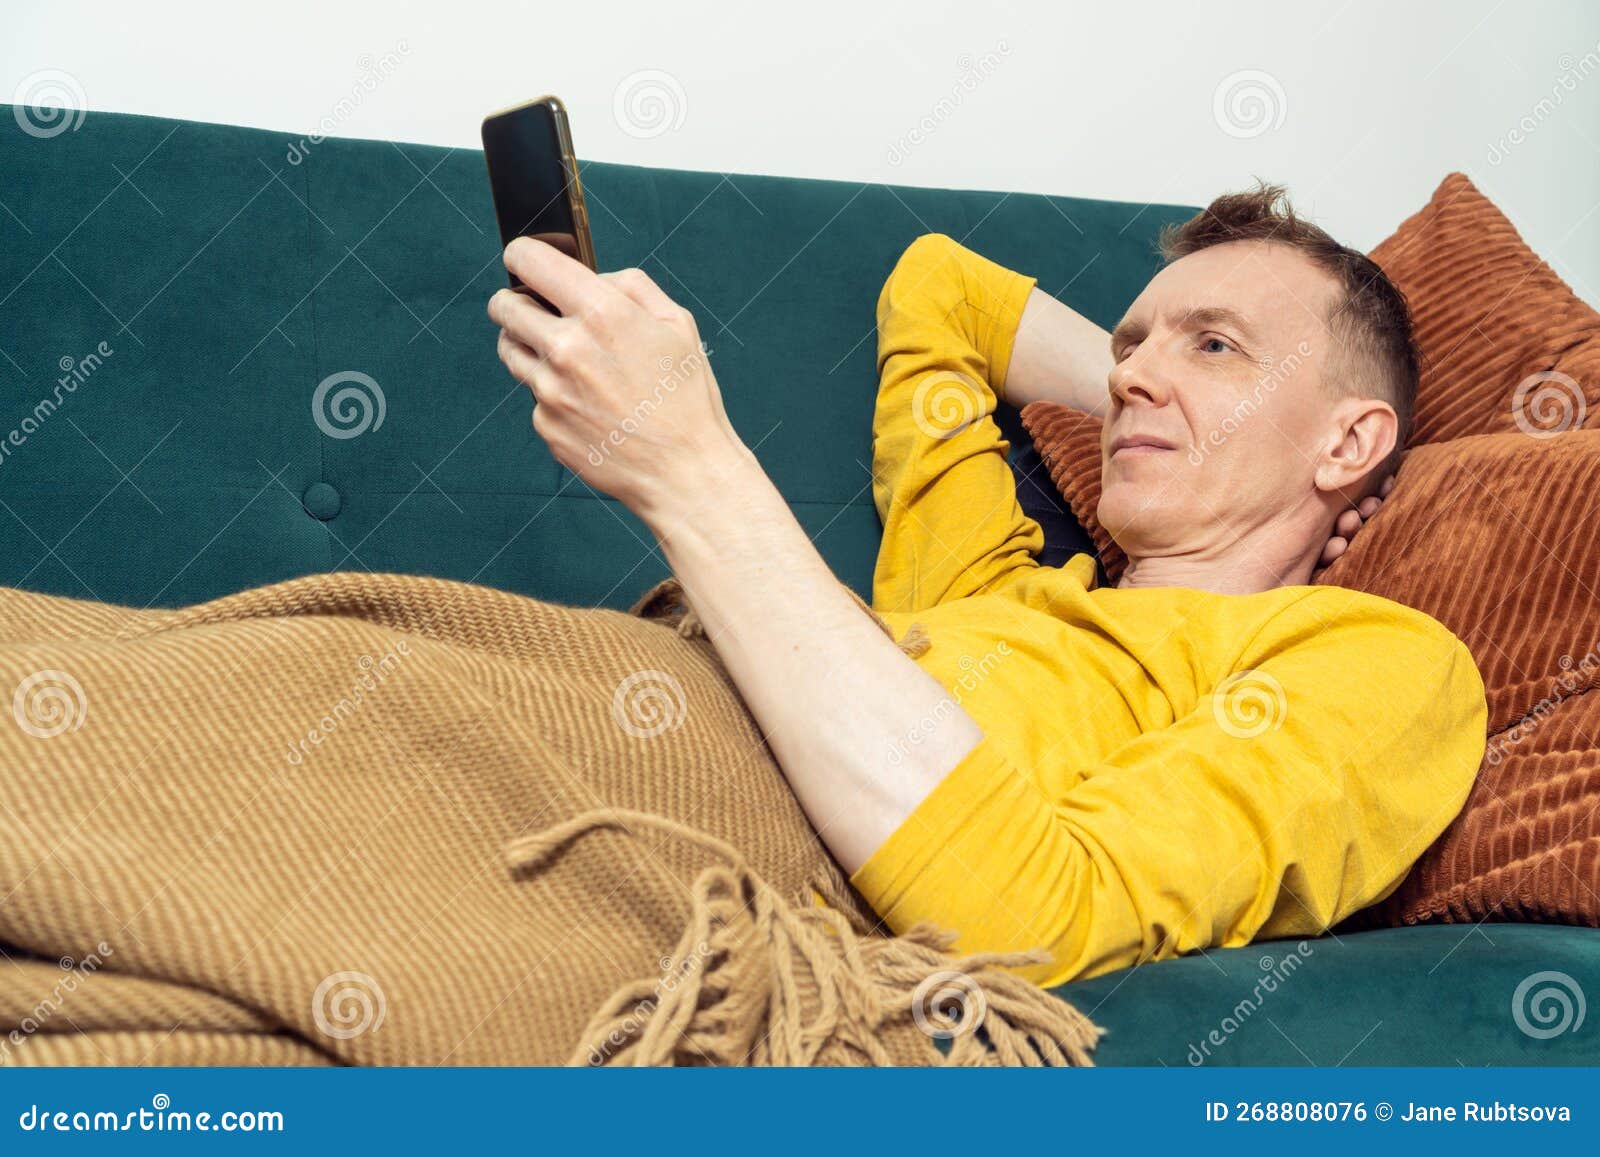 Мужчина с гриппом лежит на диване и сморкается